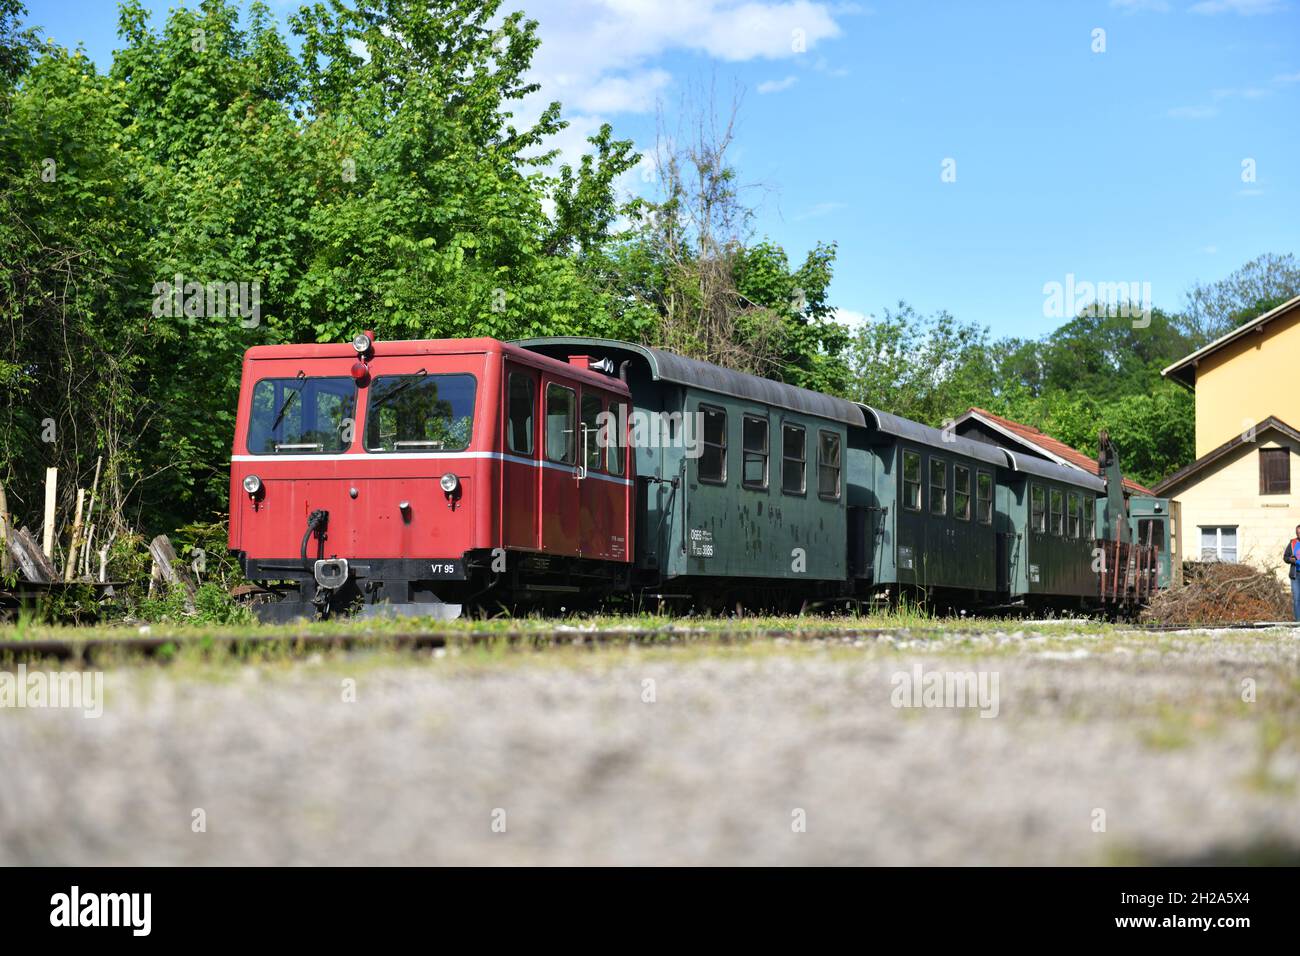 Historische Steyrtal-Bahn und Bahnhof Steyr, Österreich, Europa - Historic Steyrtal Railway and Steyr Station, Austria, Europe Stock Photo